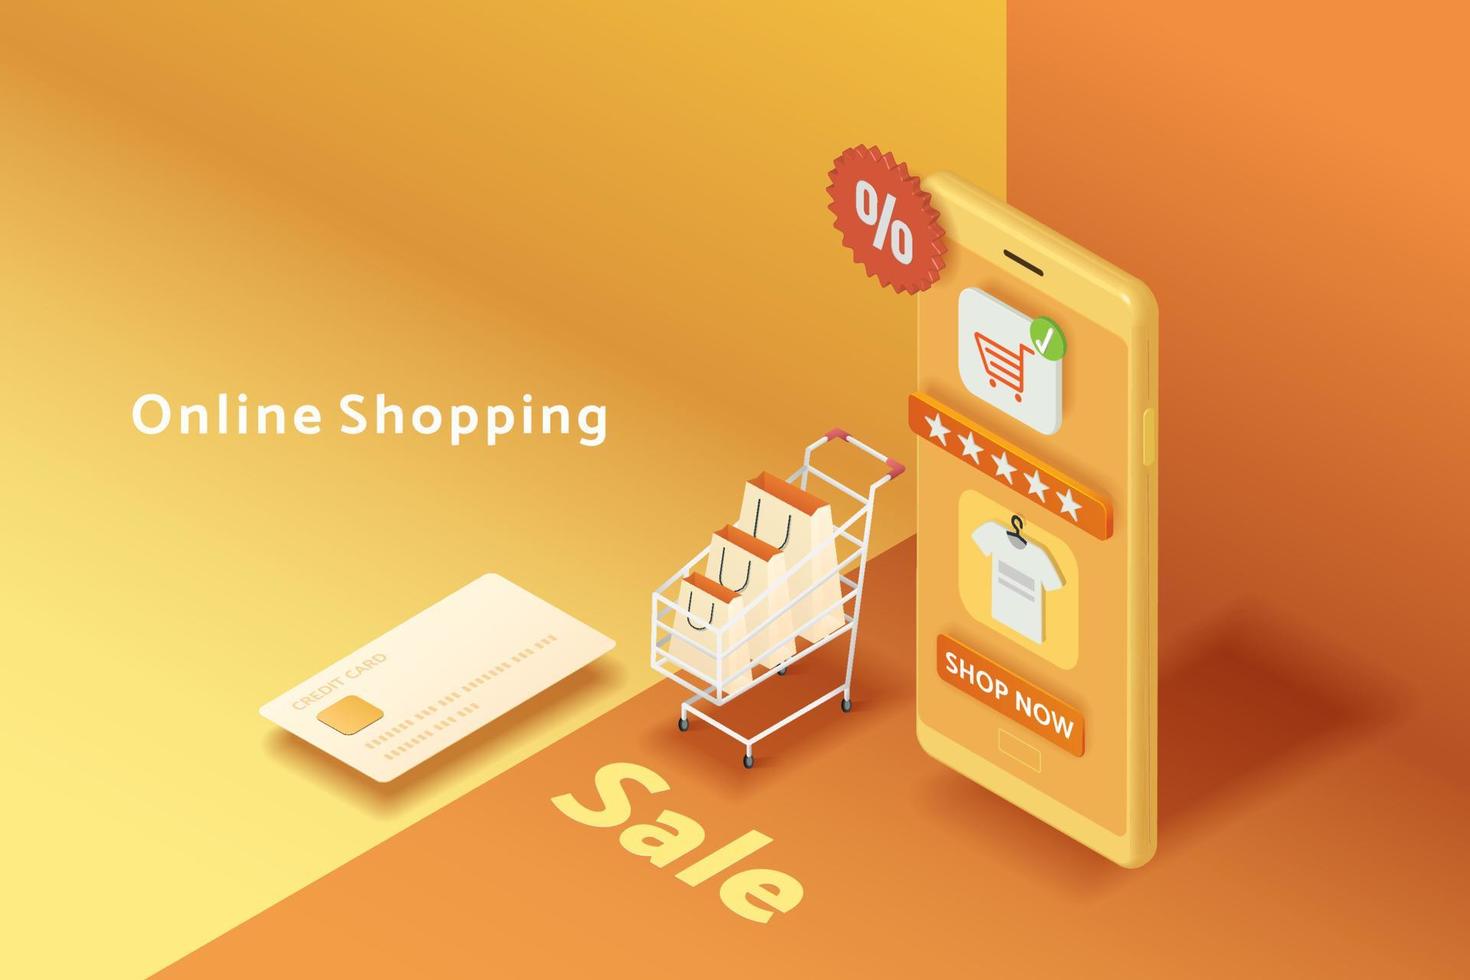 compras online via smartphone em fundo amarelo e laranja. vetor